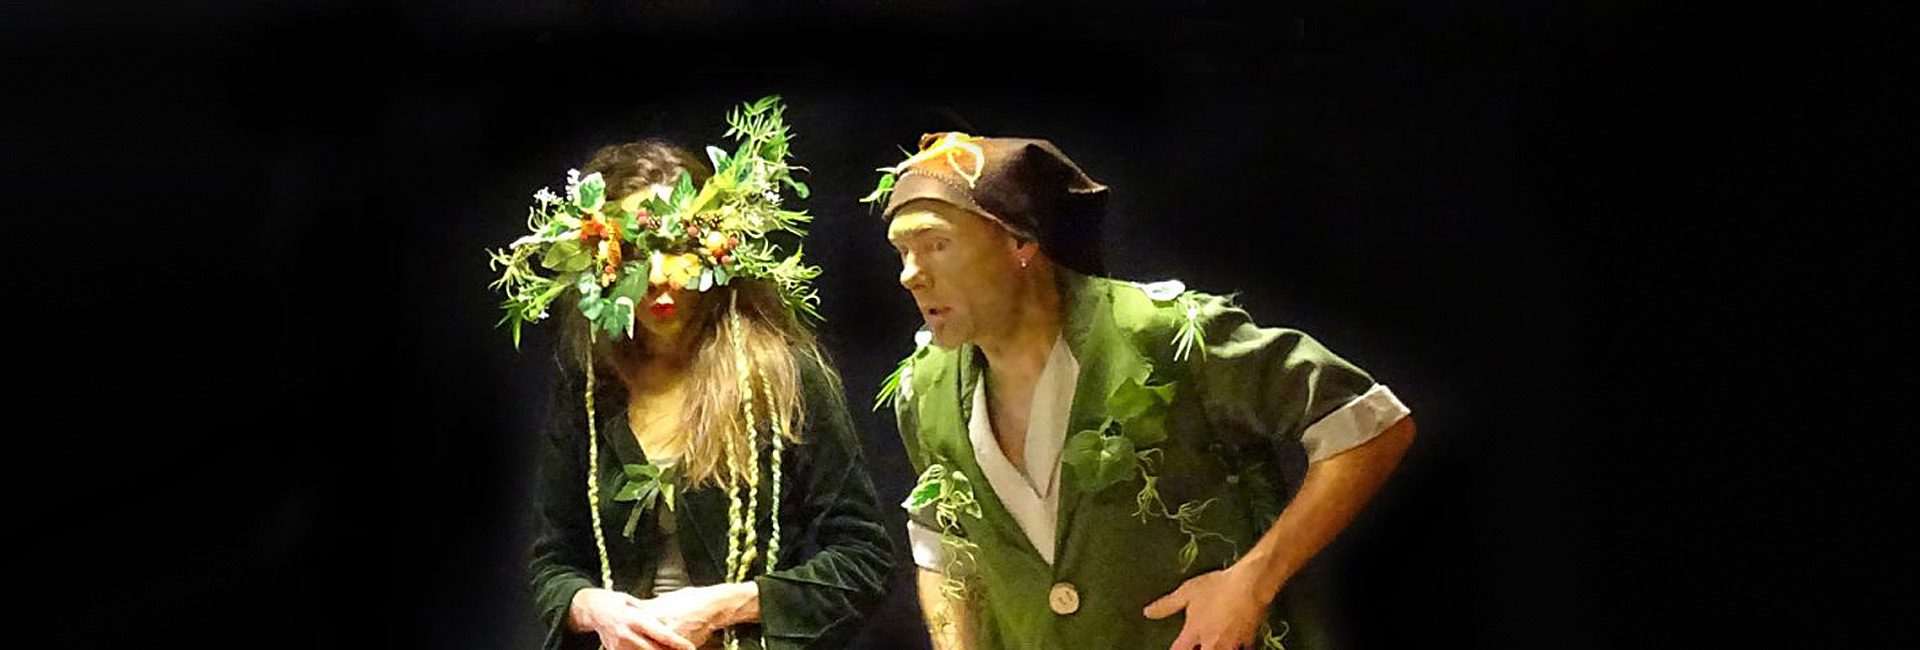 Les magiconteurs, Pierre et Déborah sur scène pour l'histoire musicale "Noël dans la forêt".